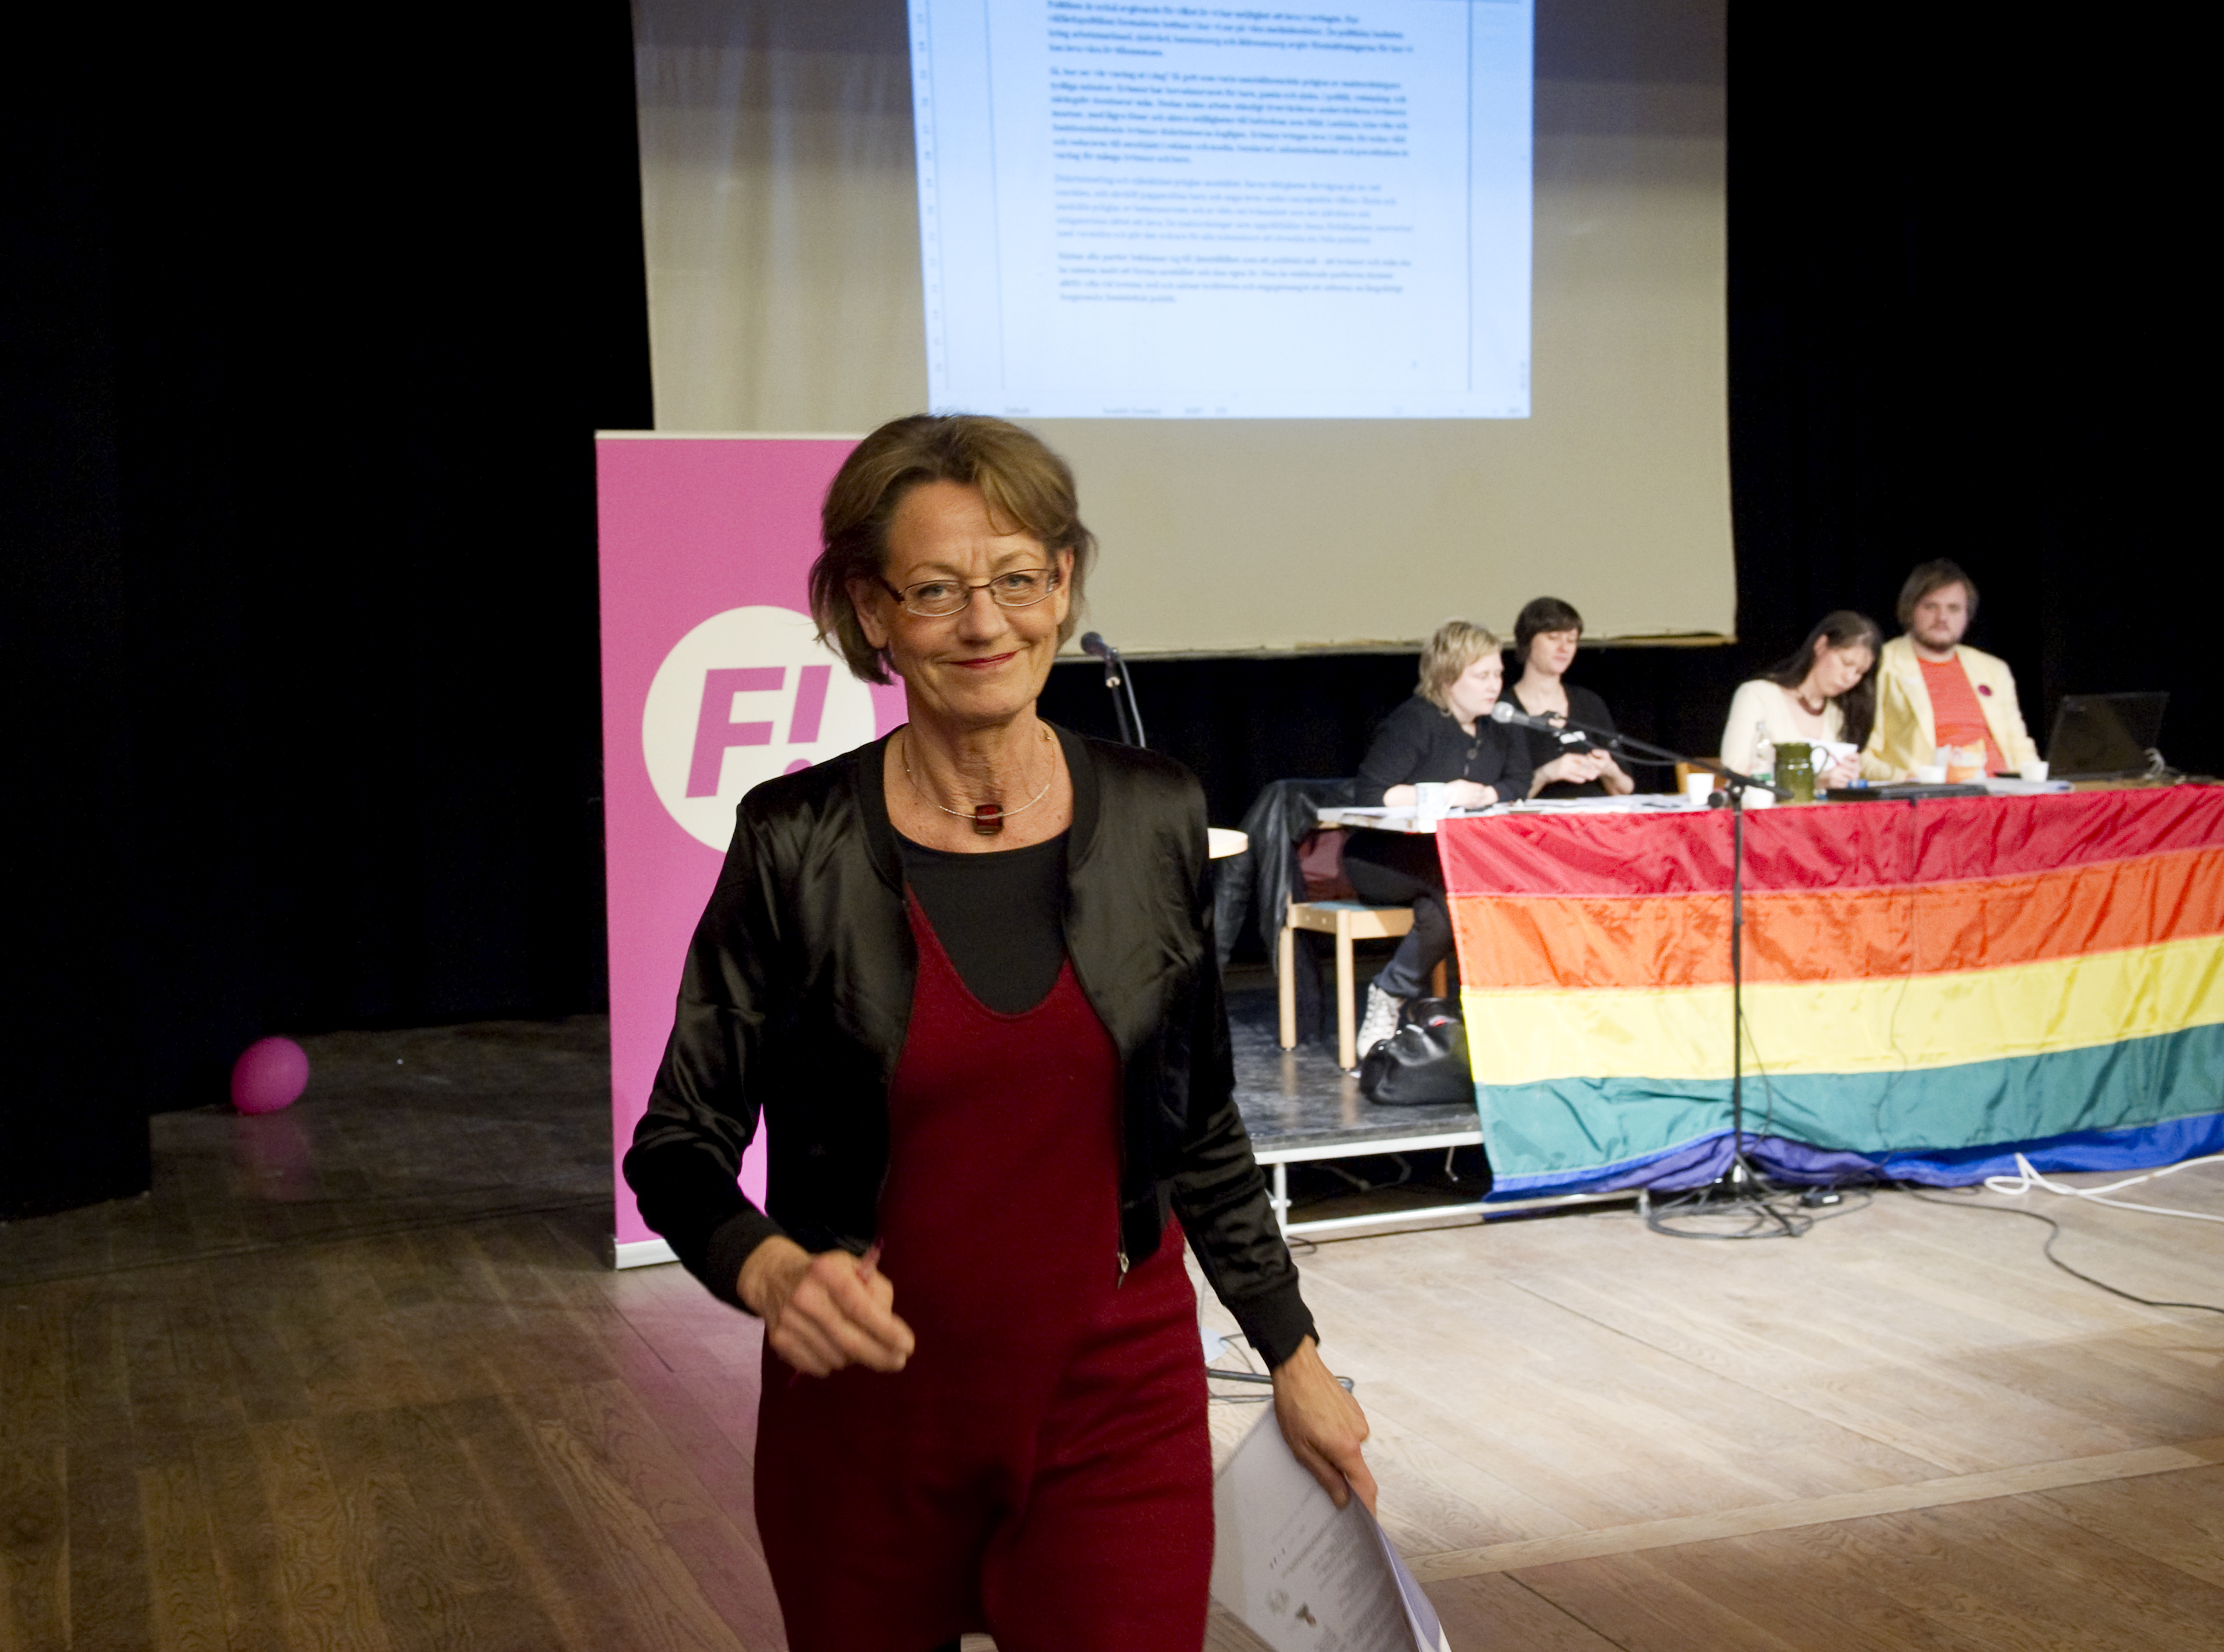 Gudrun Schyman, Riksdagsvalet 2010, Arbetsmarknad, Lönediskriminering, Feministiskt initiativ